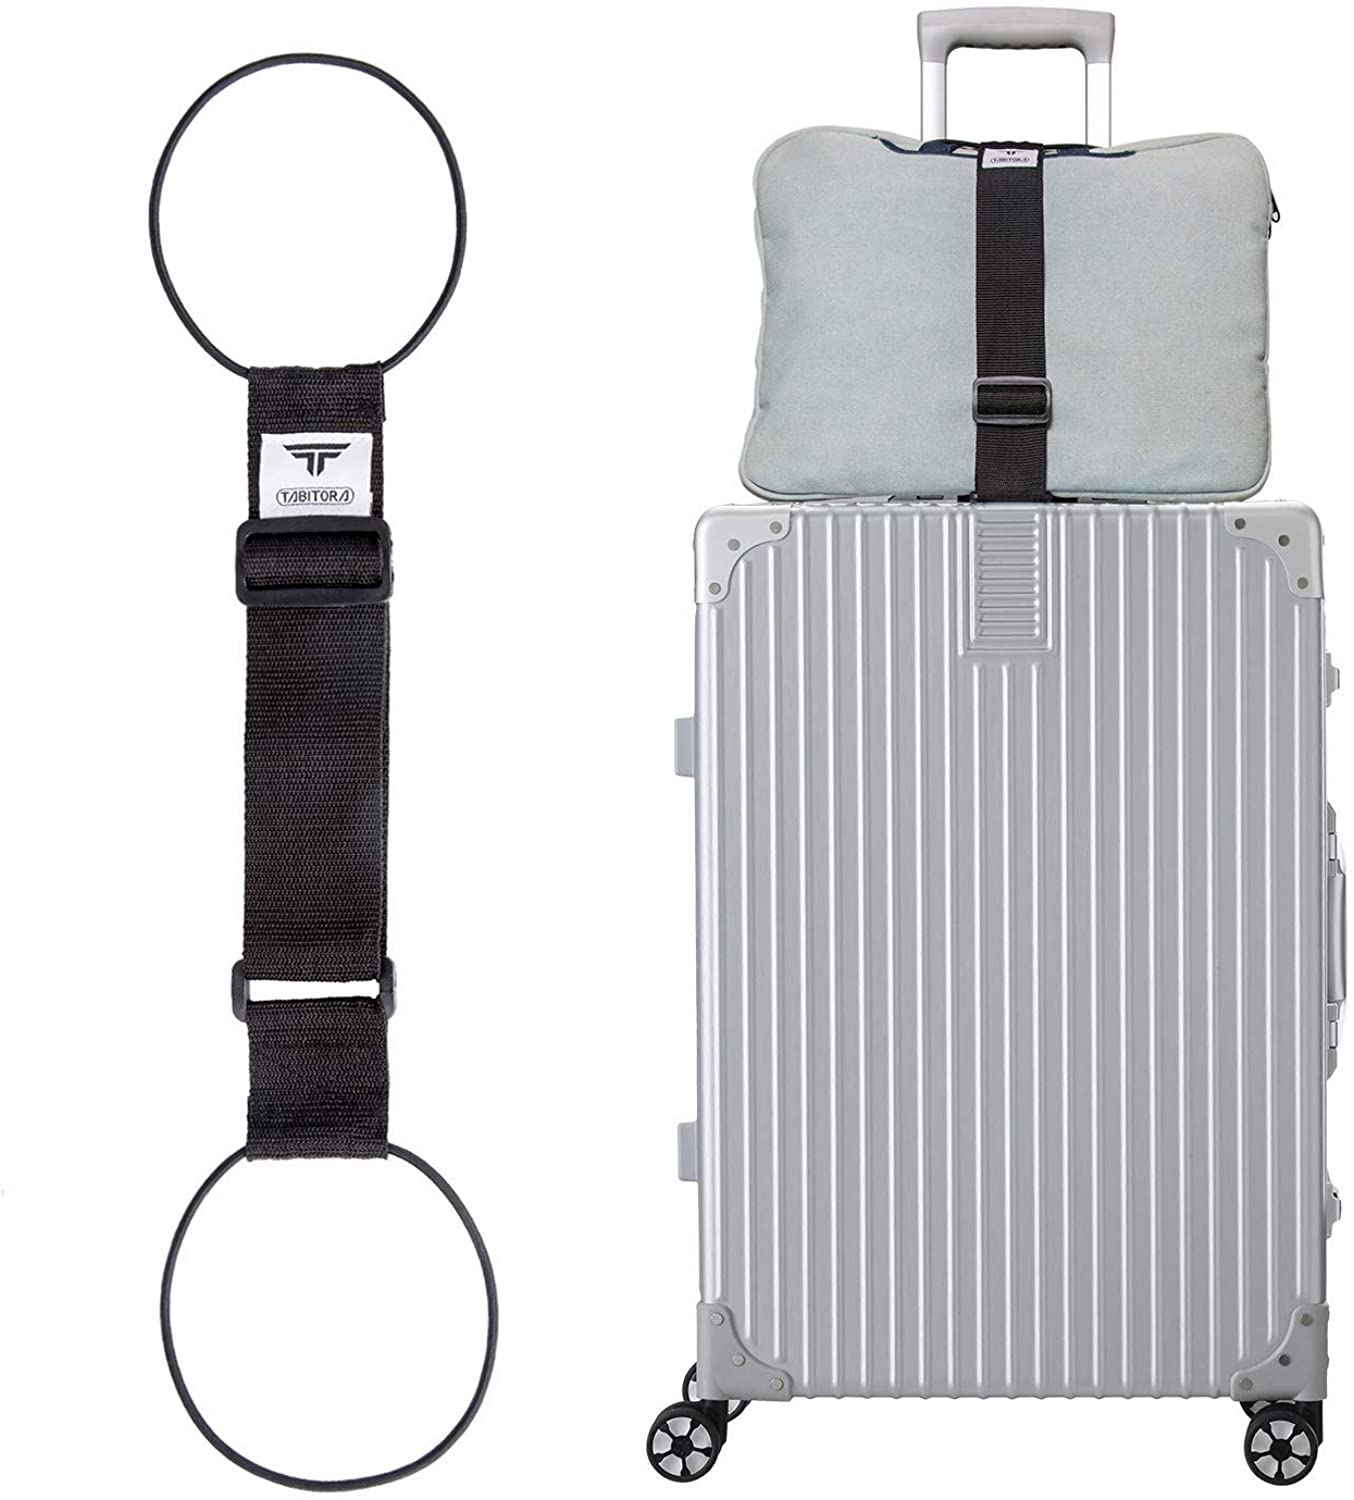 TABITORA 「BXD01-Black」 バッグとめるベルト スーツケースベルト 旅行用品 旅行便利グッズ スーツケースベルト 57-75cm 調節可 x 幅5cm 1